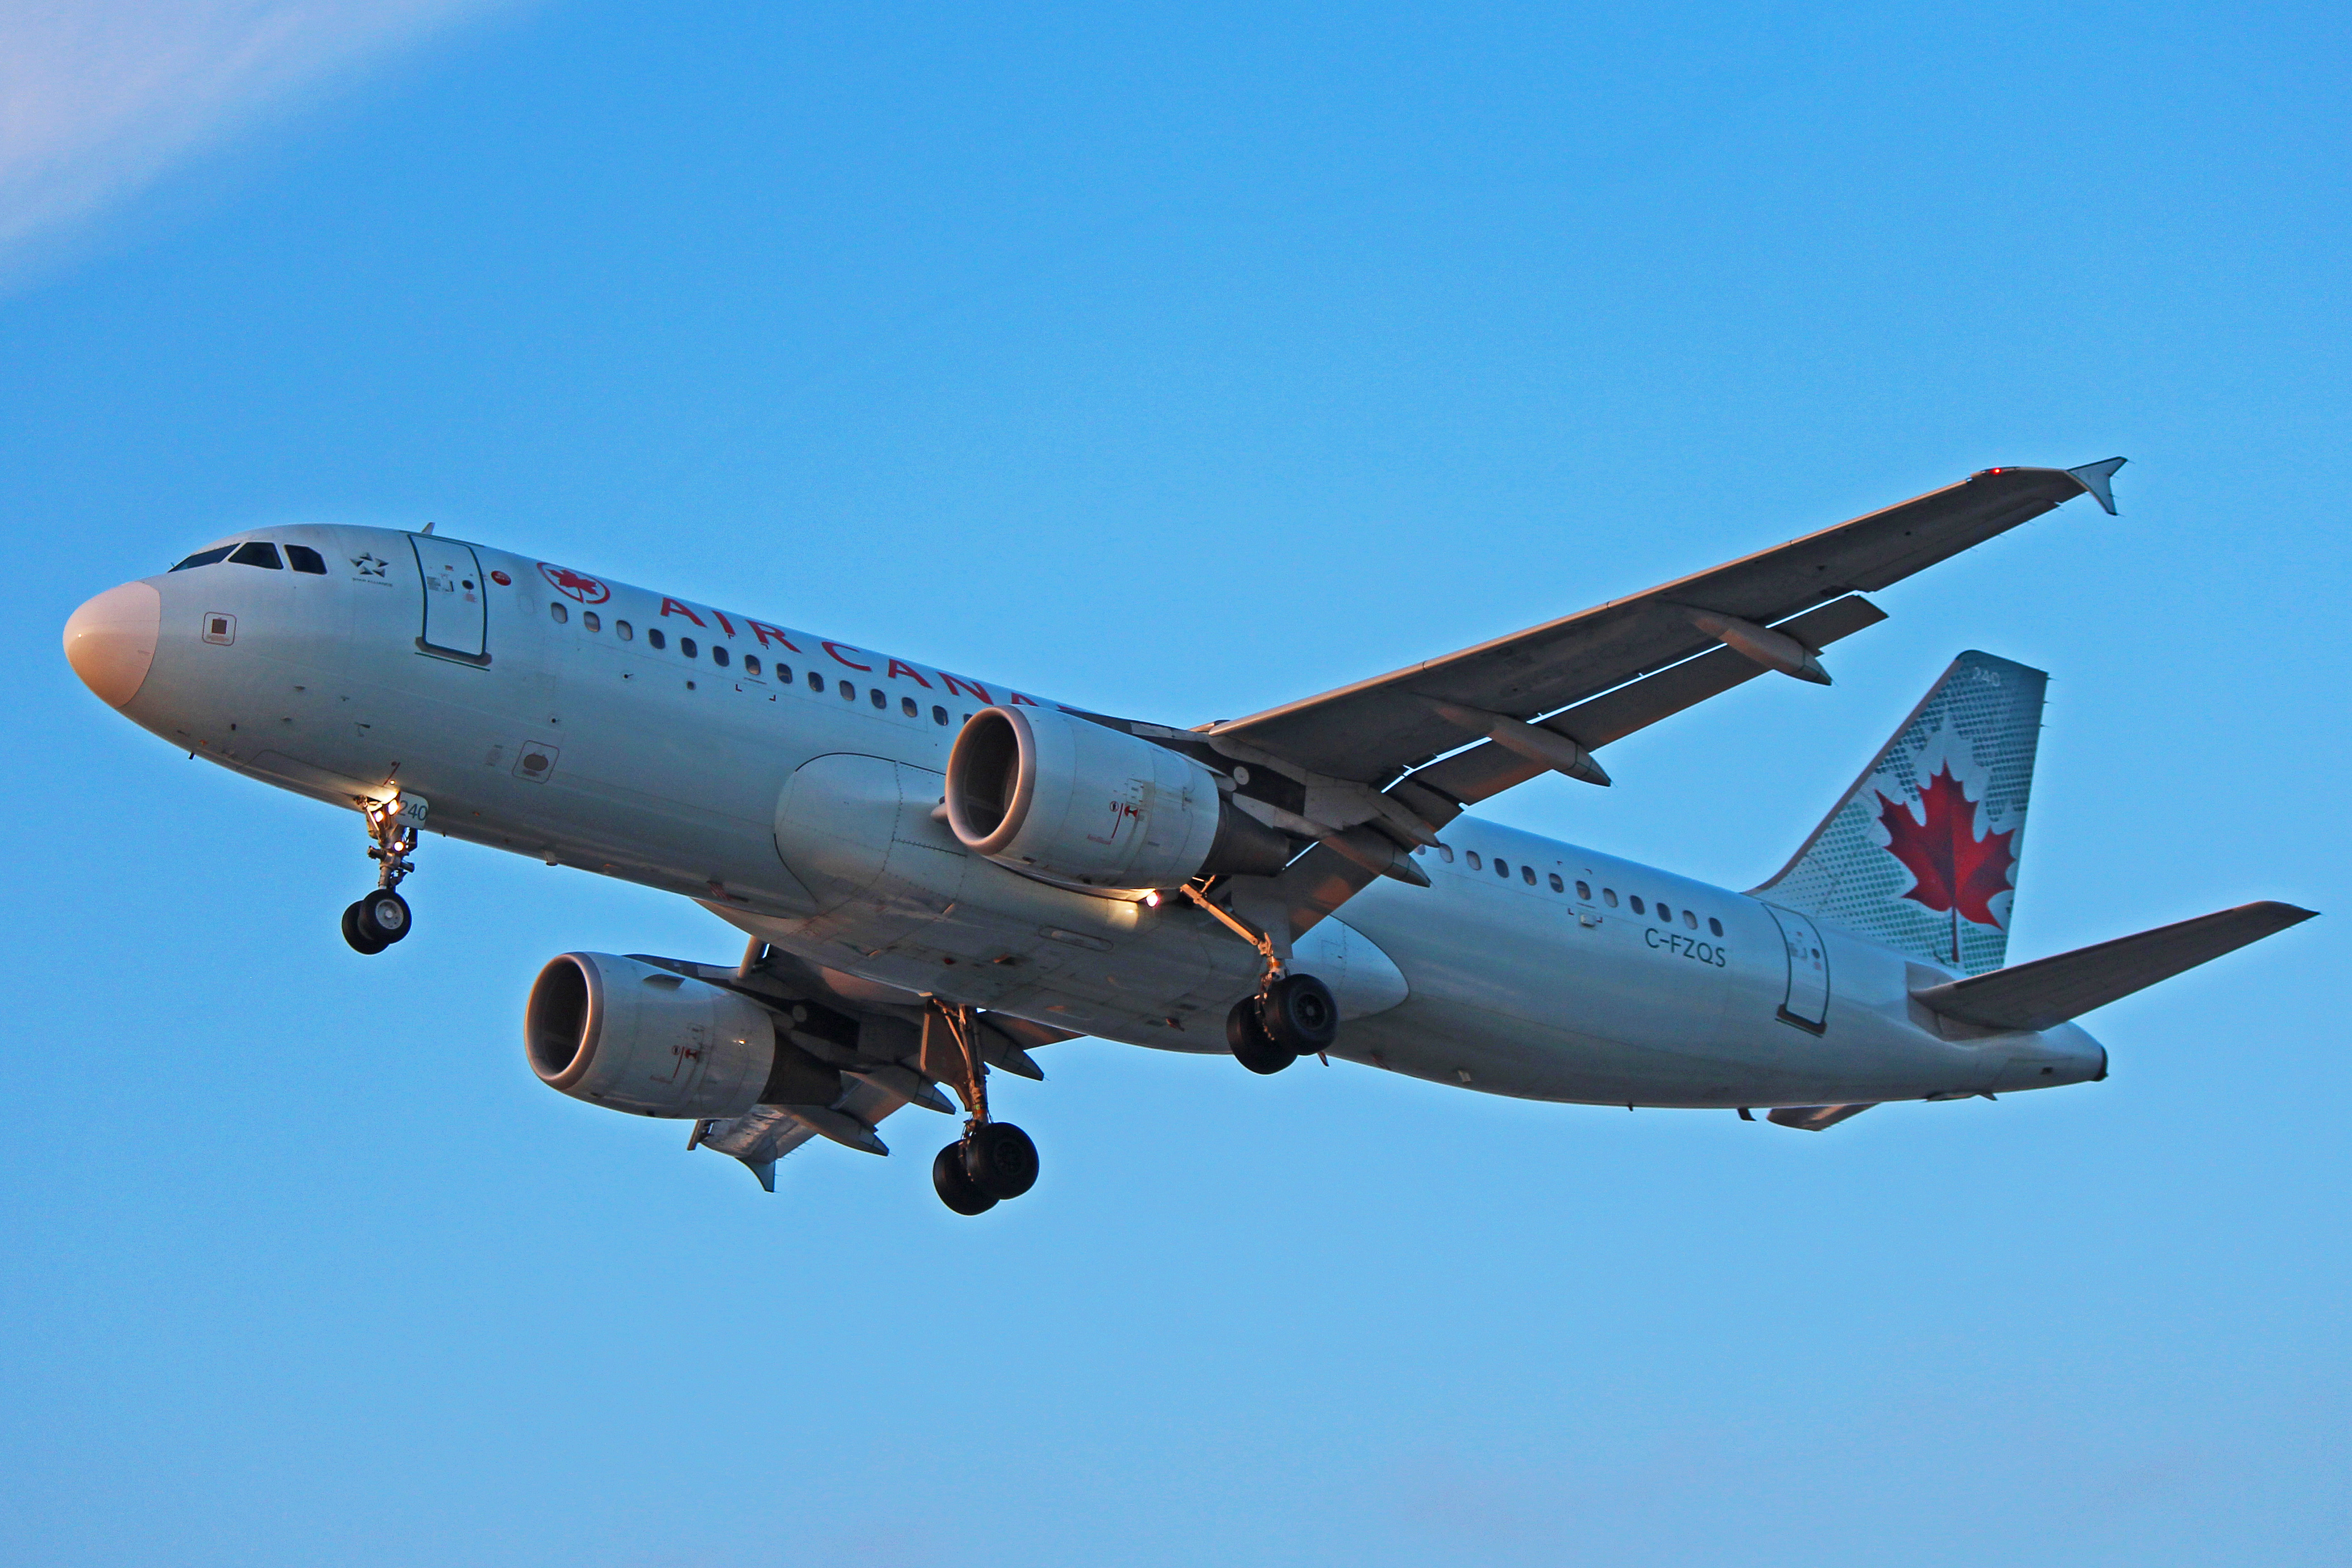 C Fzqs Air Canada Airbus A320 200 Near Landing Collision In 2016